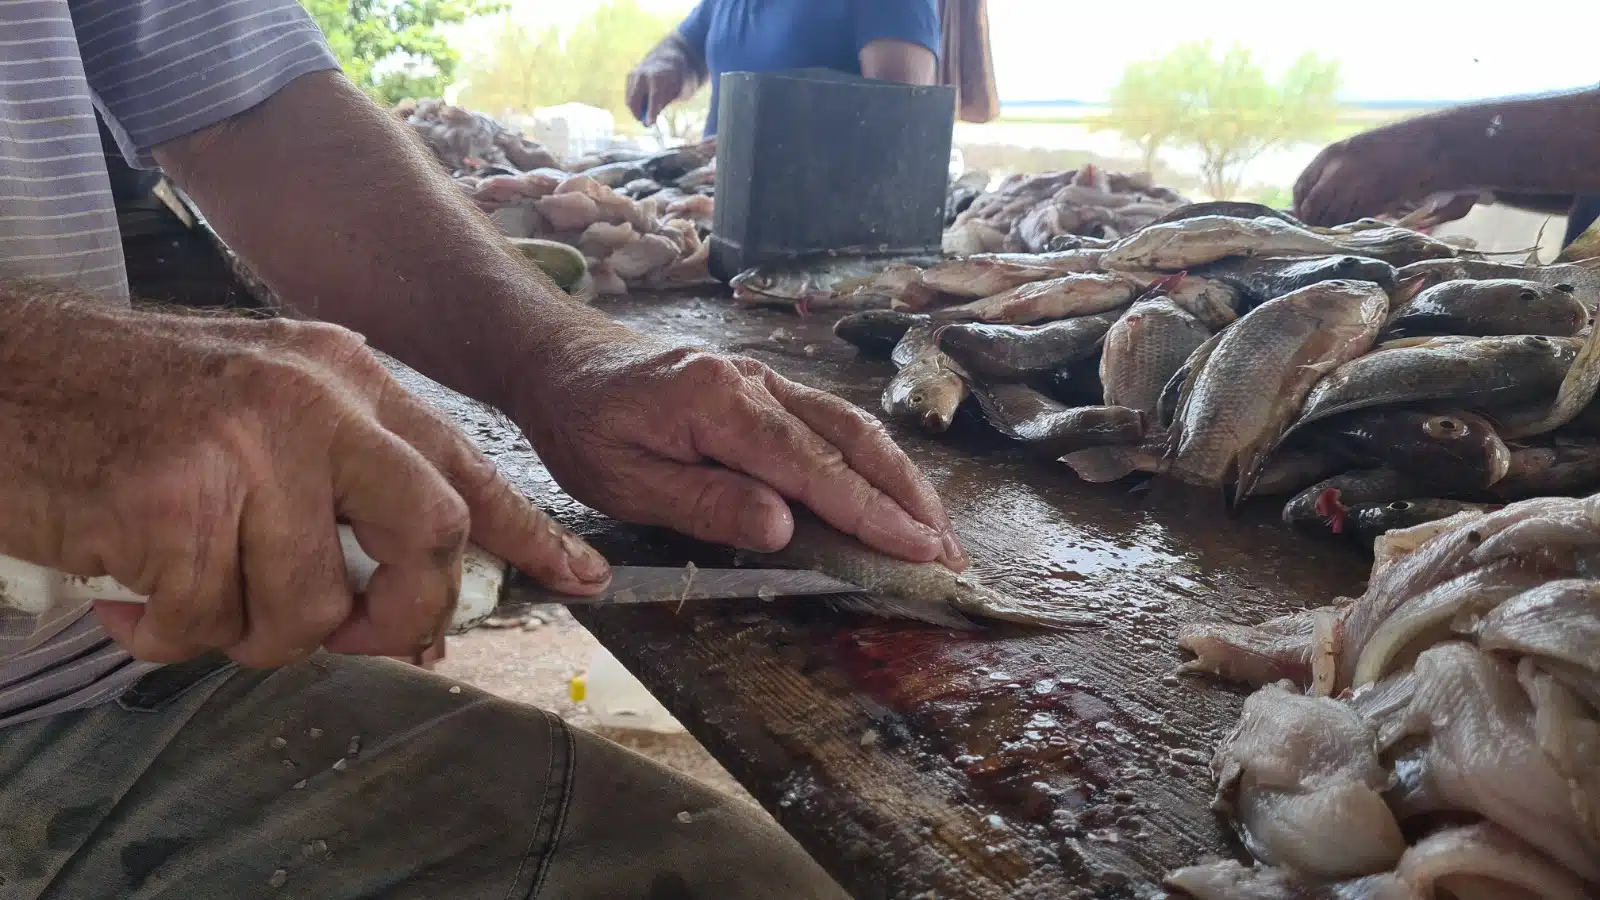 Manos de una persona limpiando pescados